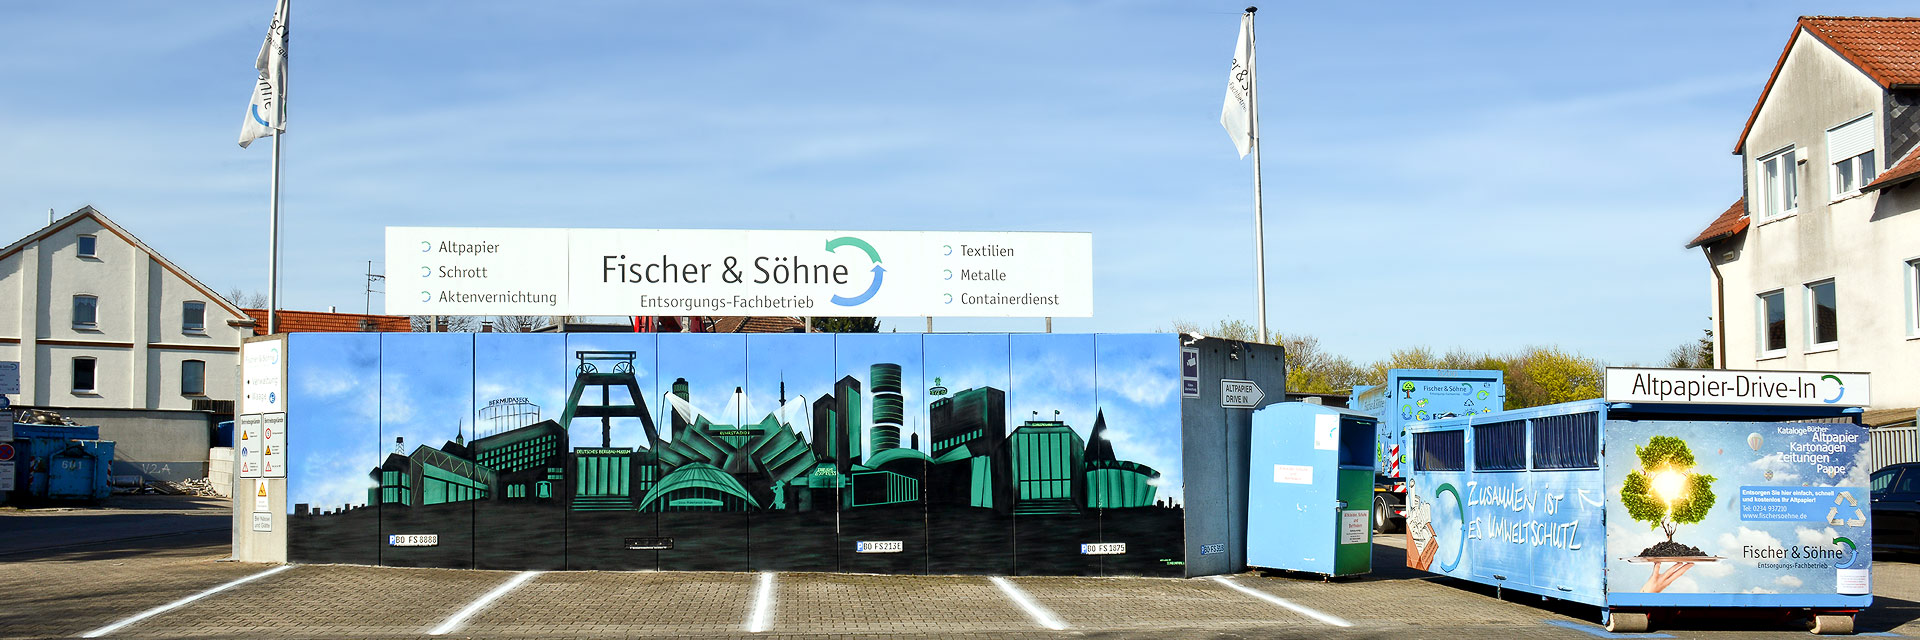 Fischer & Söhne – Entsorgungs-Fachbetrieb in Bochum